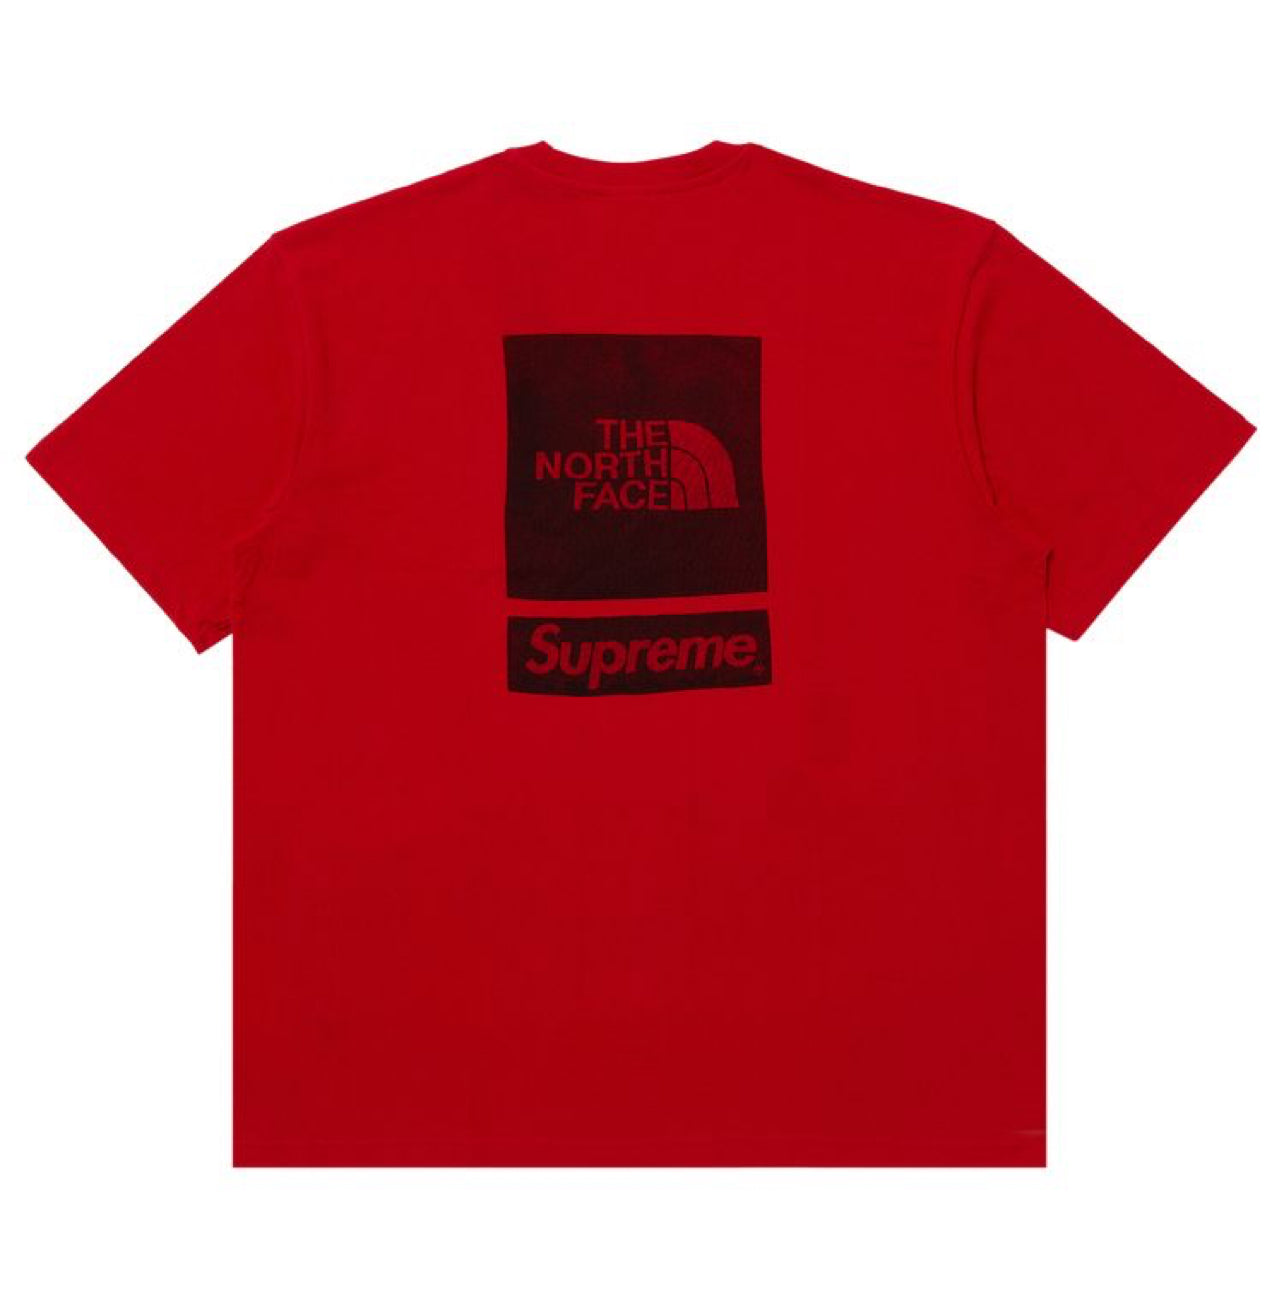 Camiseta Supreme The North Face M/C “Rojo”